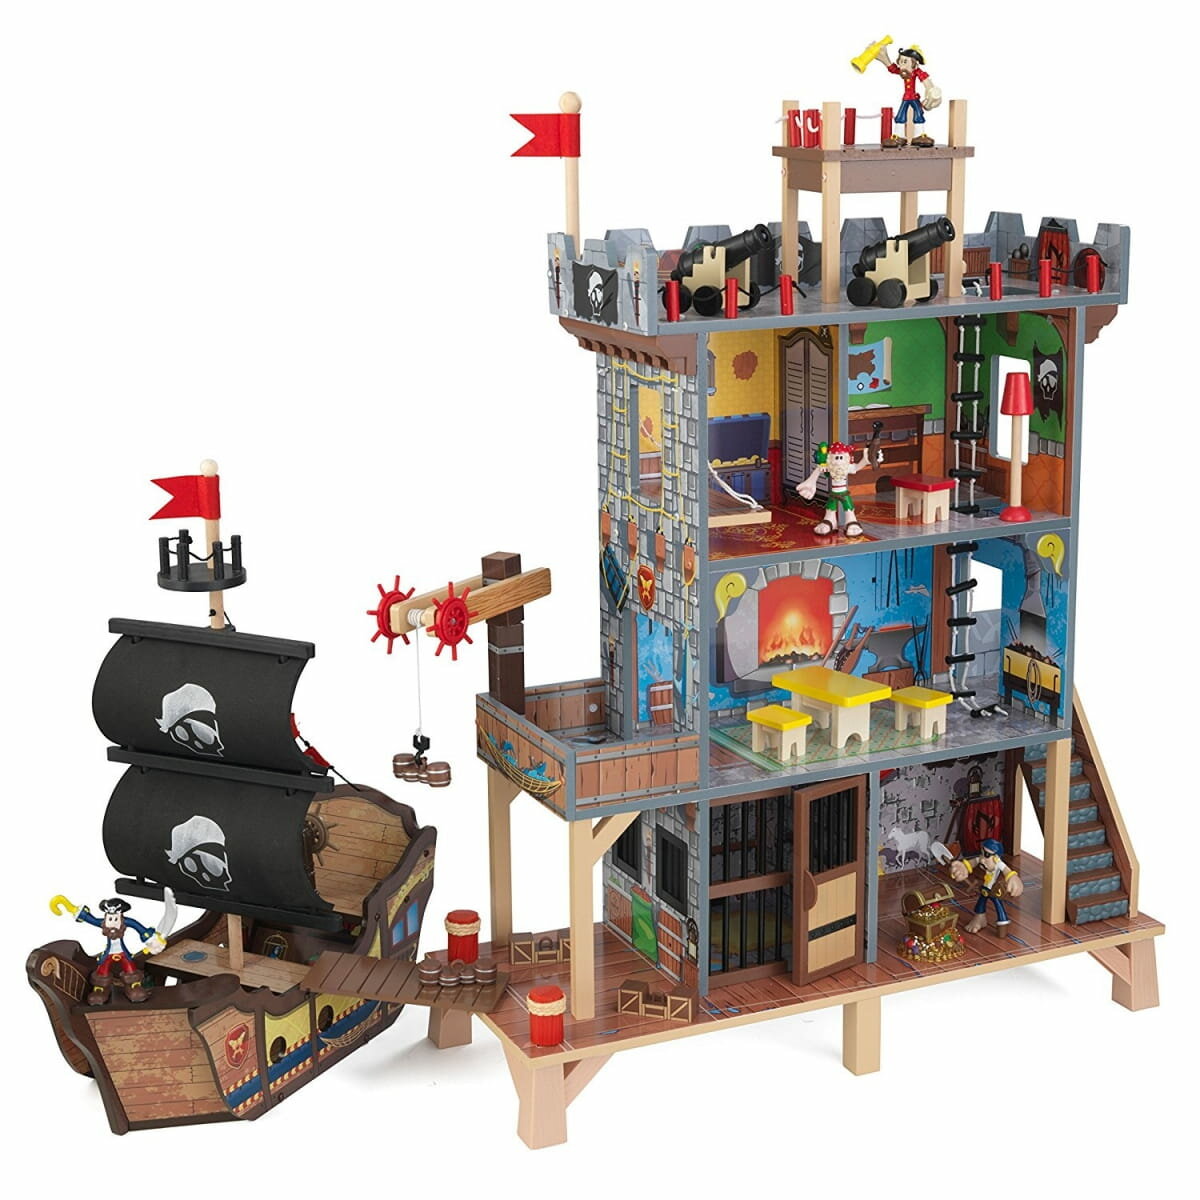 KIDKRAFT игровой набор Пиратская крепость Форт (с кораблем)